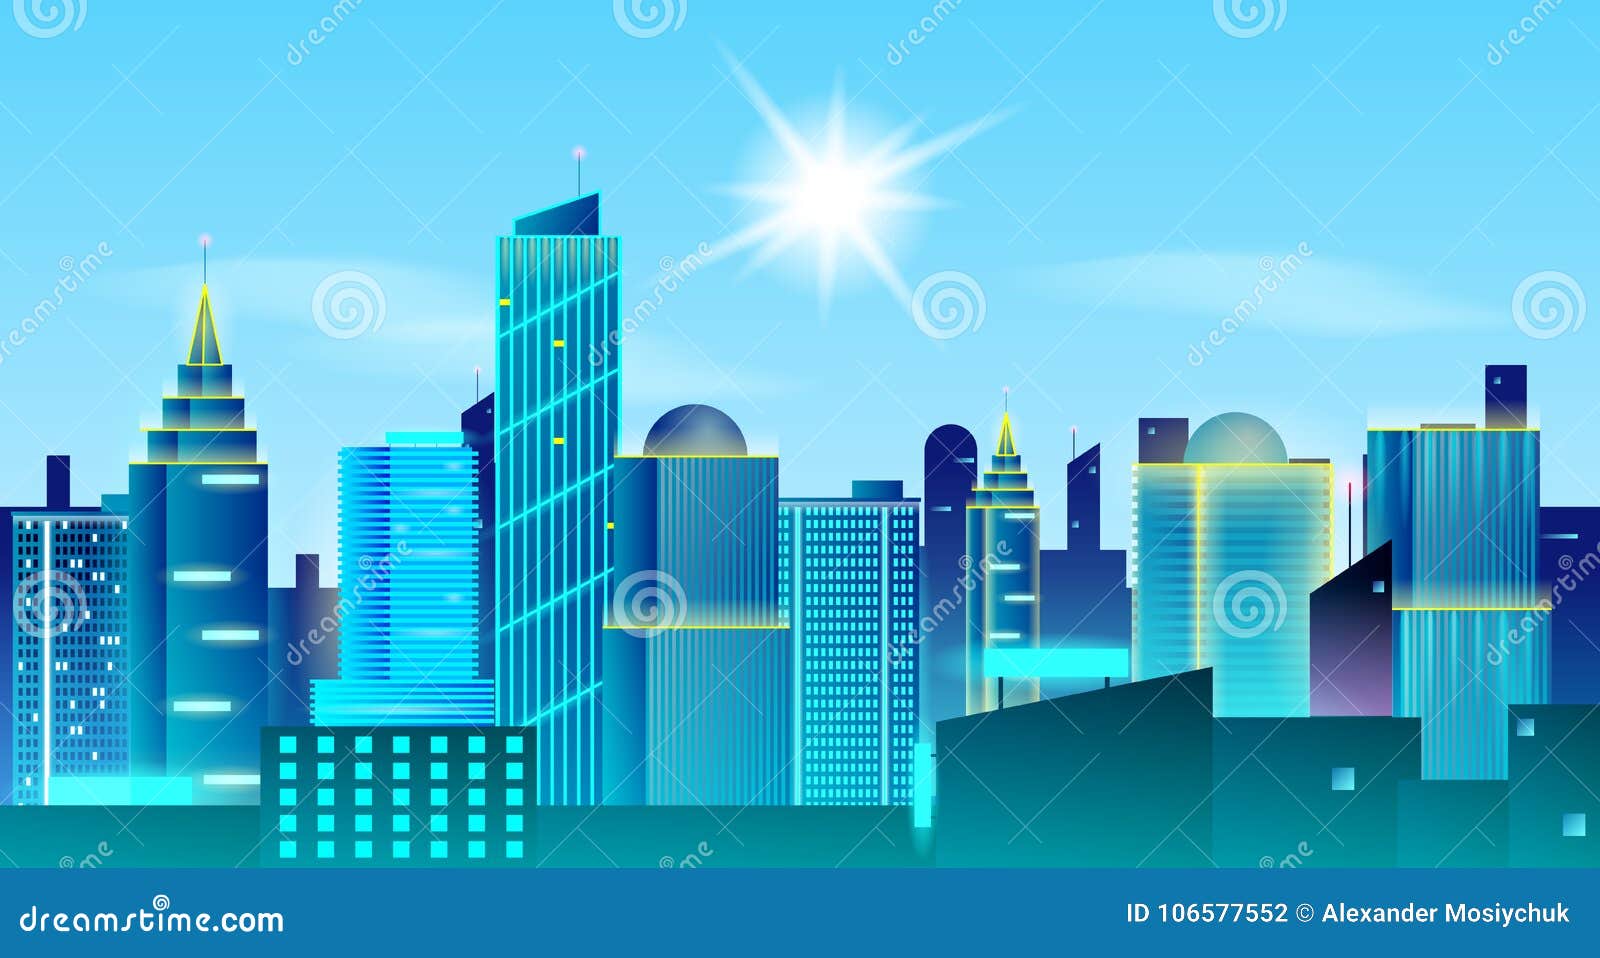 大城市风景背景晴天在大都会房地产设计观念向量例证 插画包括有